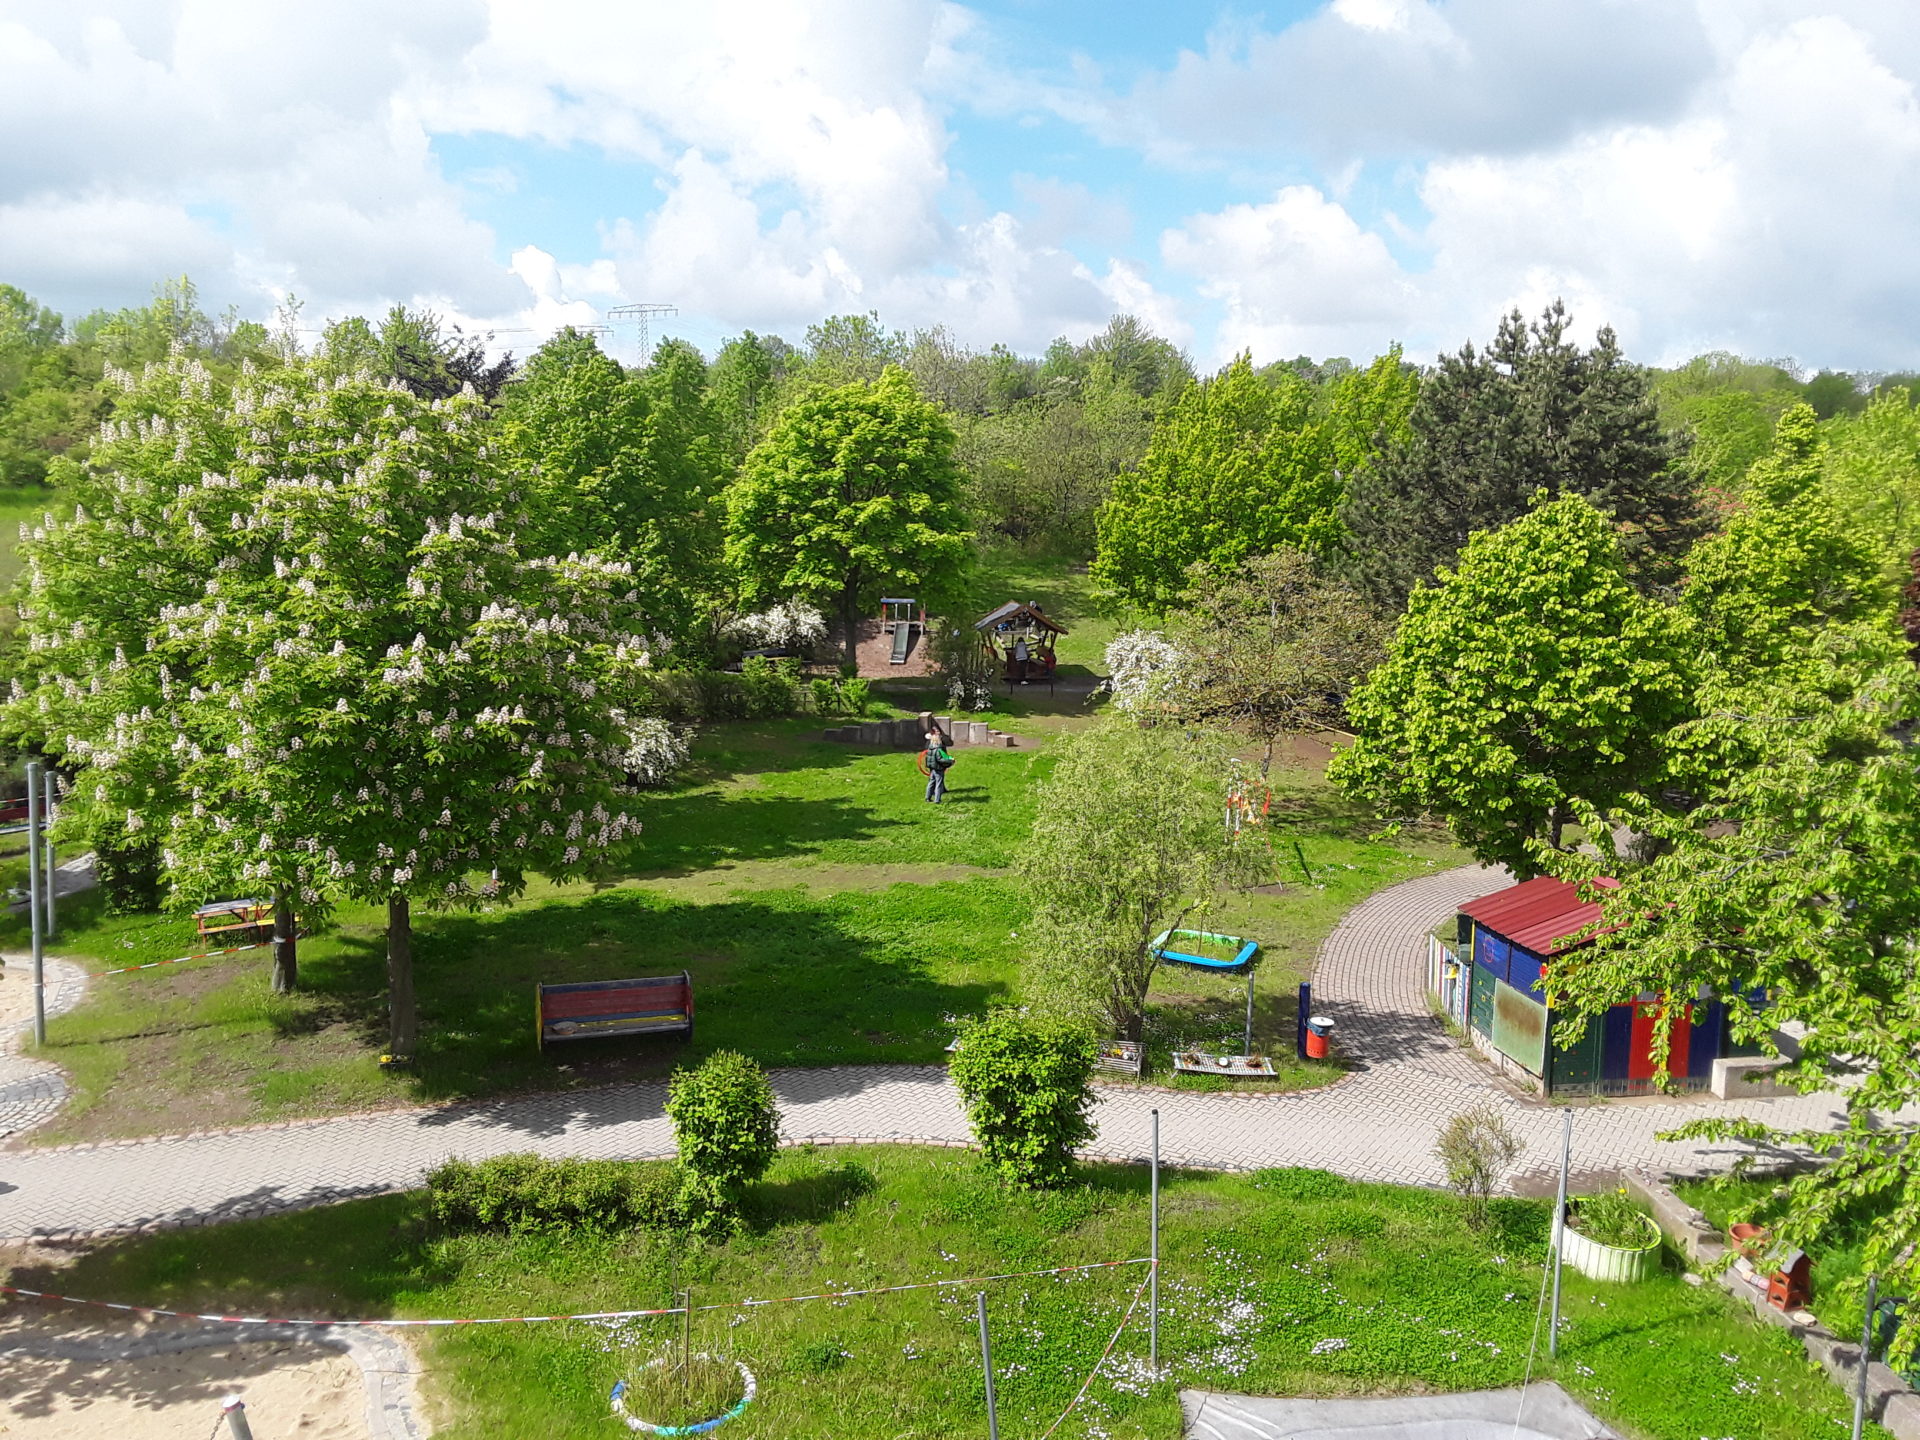 Garten des Lebens – Kindergarten Zwergenland